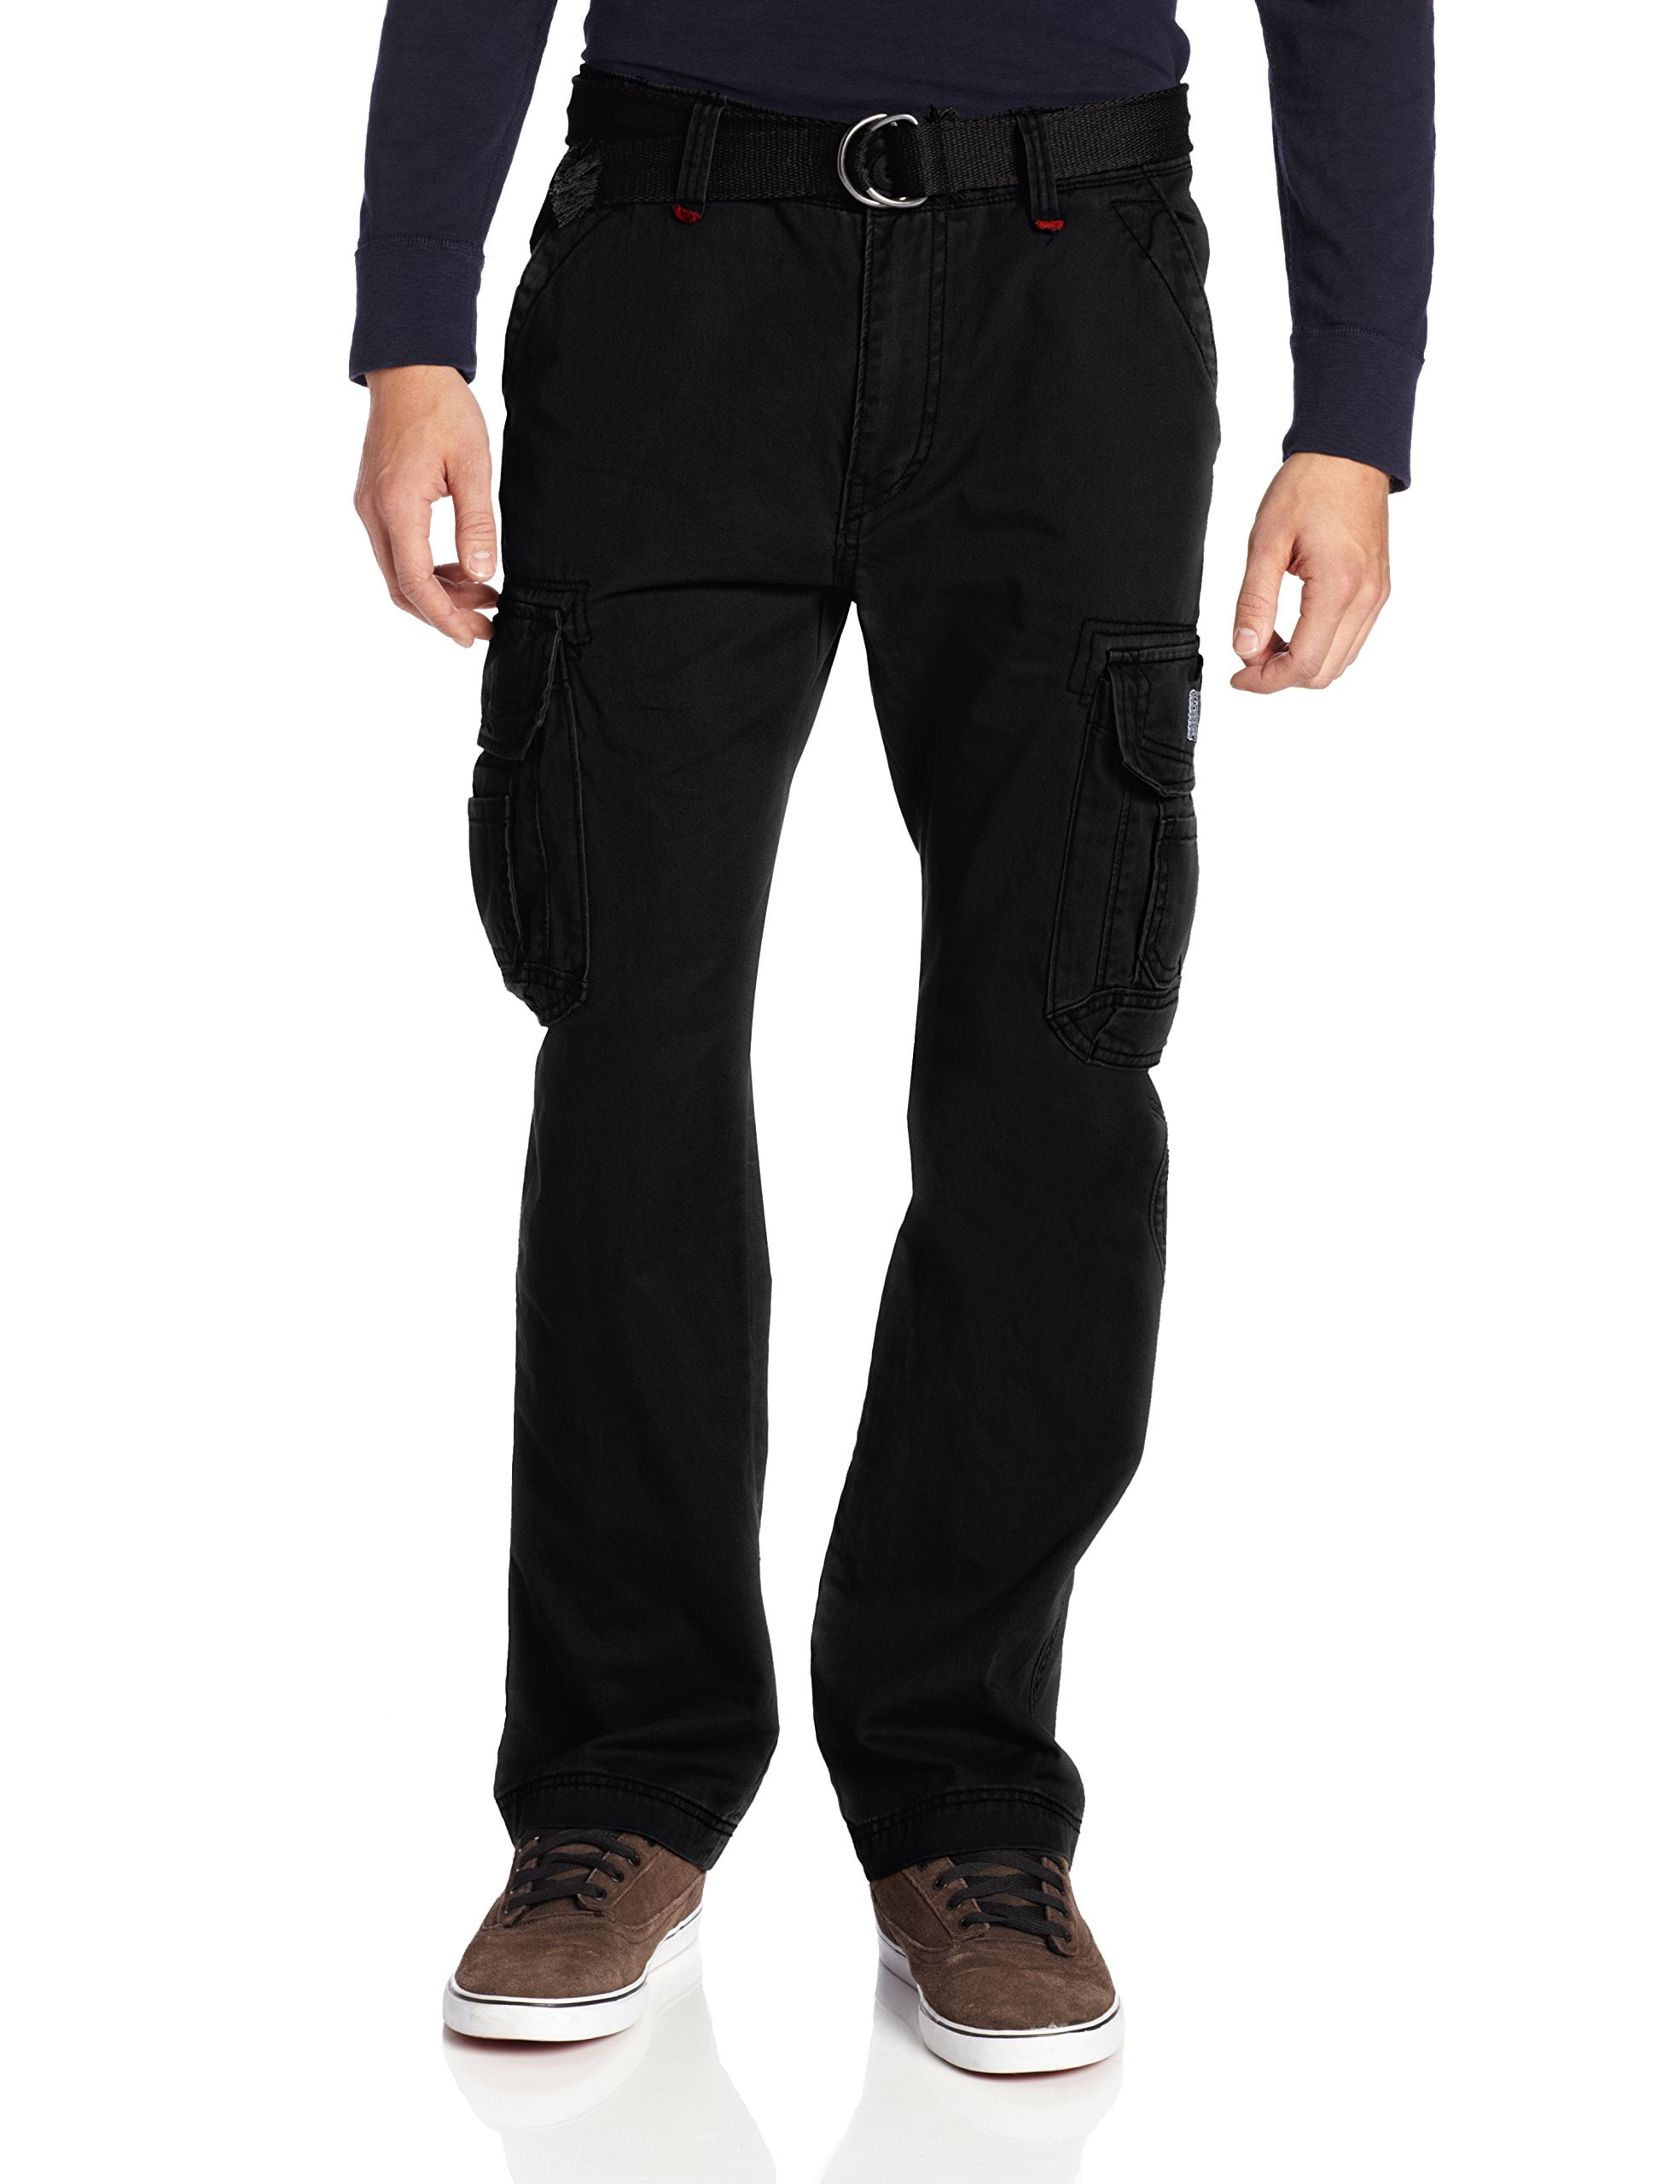 Men's Casual Black Cotton Jeans Plus Size 36-52 Stretch Loose Fit Baggy Pants 